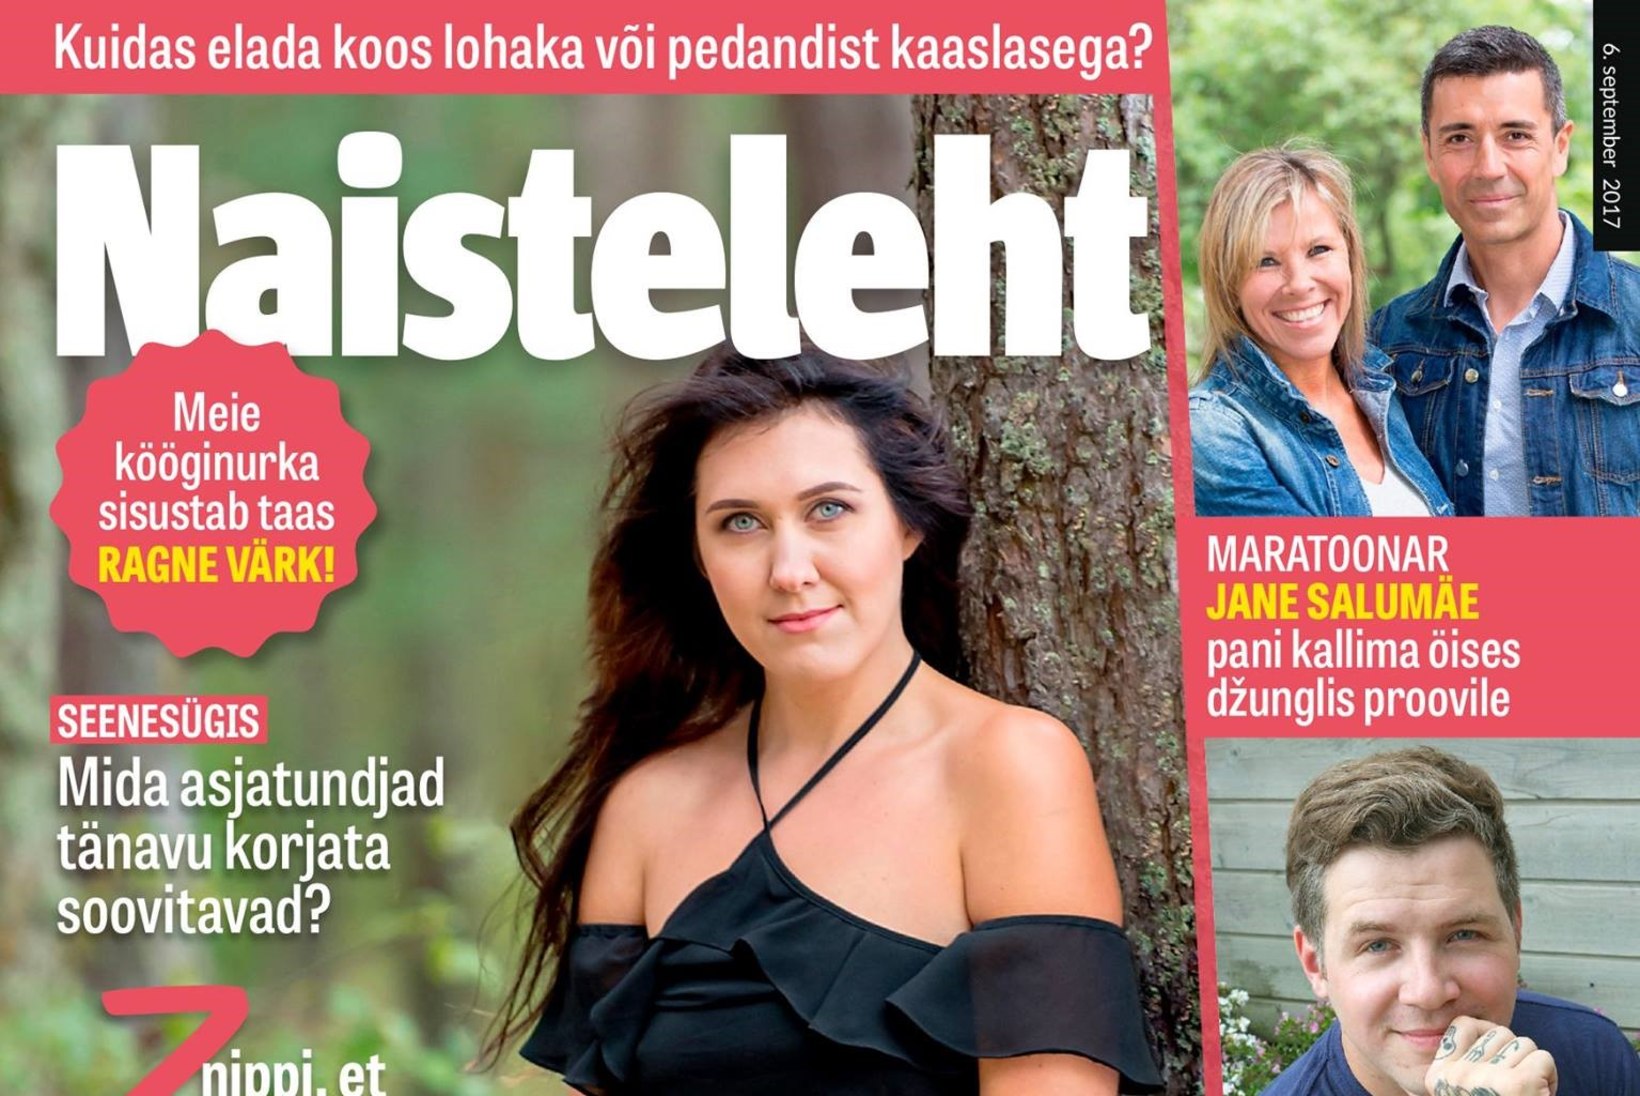 Eesti parim nais­maratoonar Jane Salumäe: "Minu tippaeg naisena algas alles 30. eluaastates."